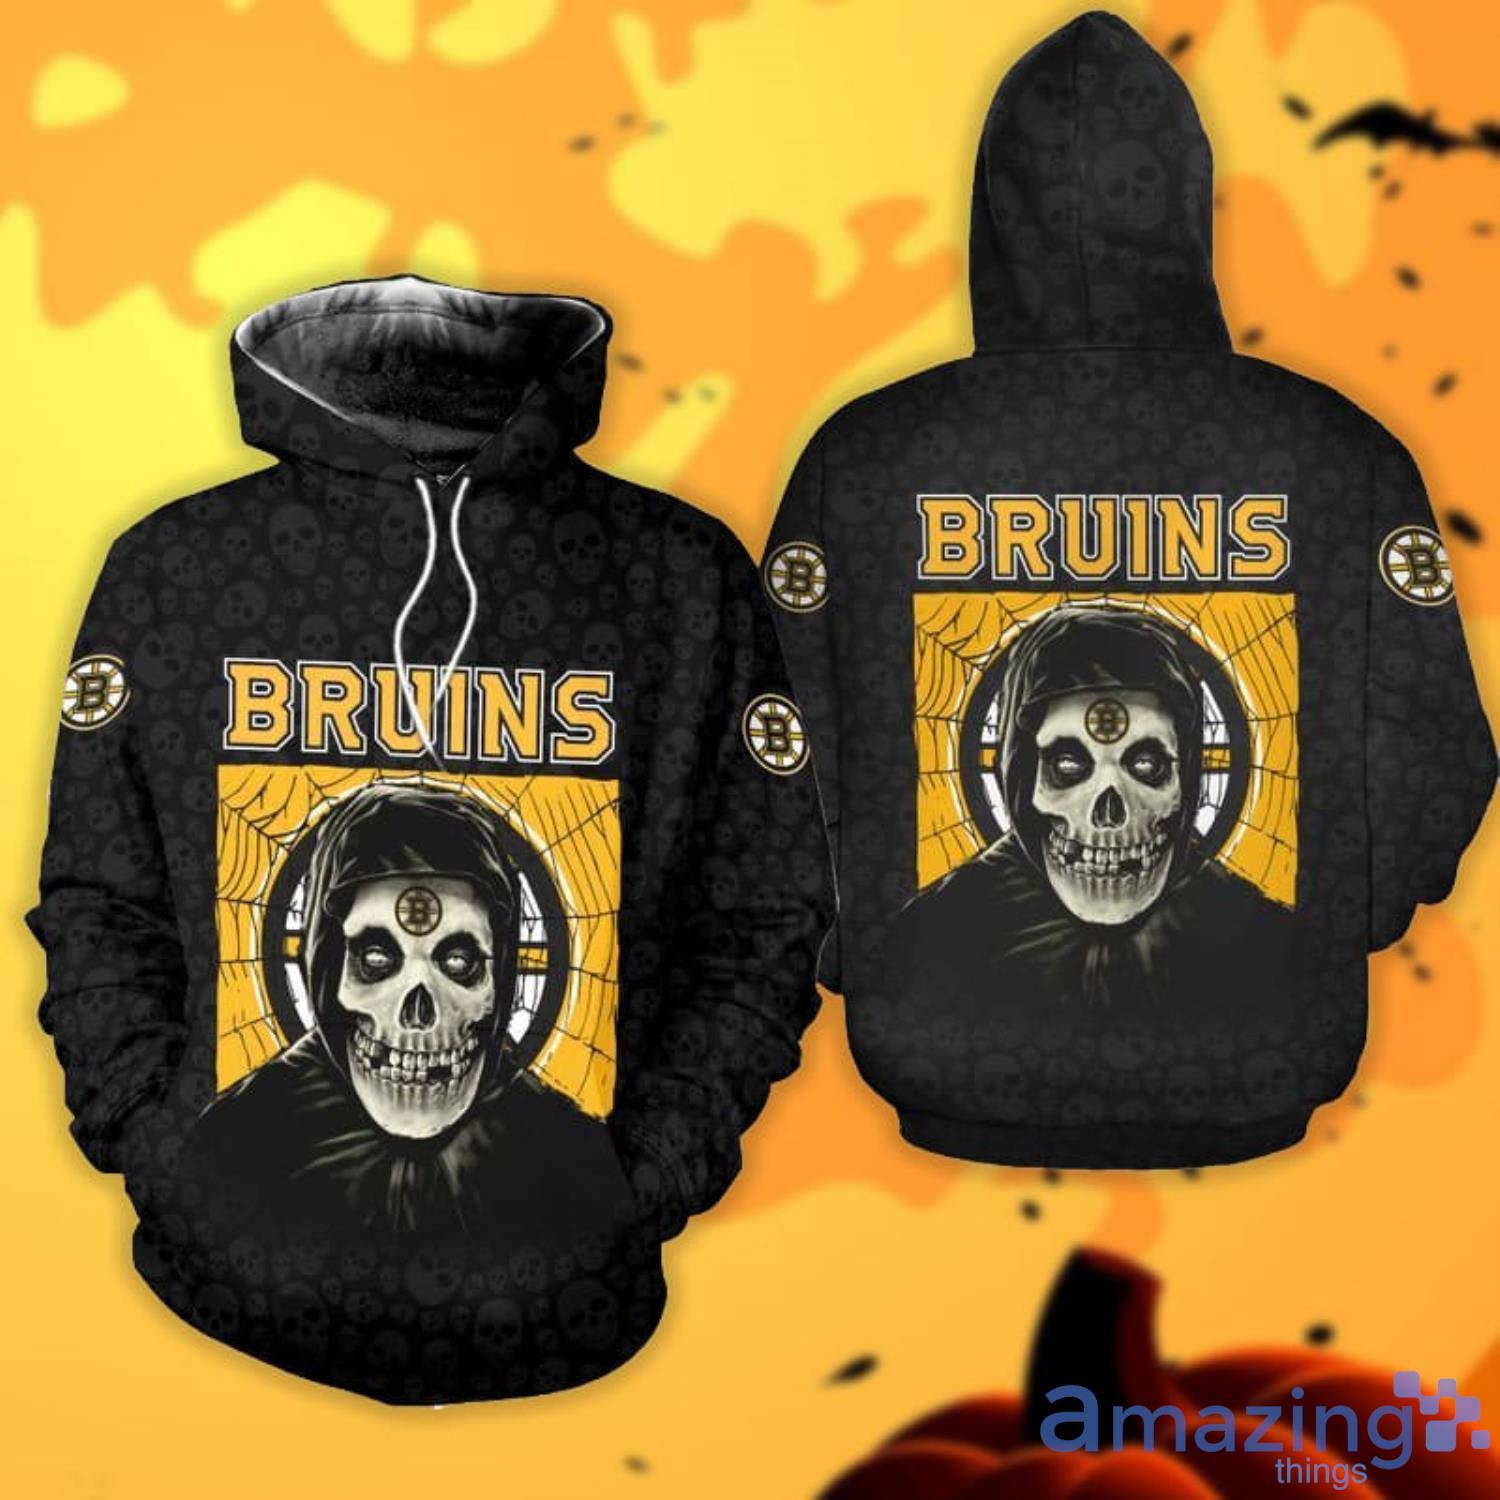 Bruins Sweatshirt  Bruins sweatshirt, Sweatshirts, Print clothes